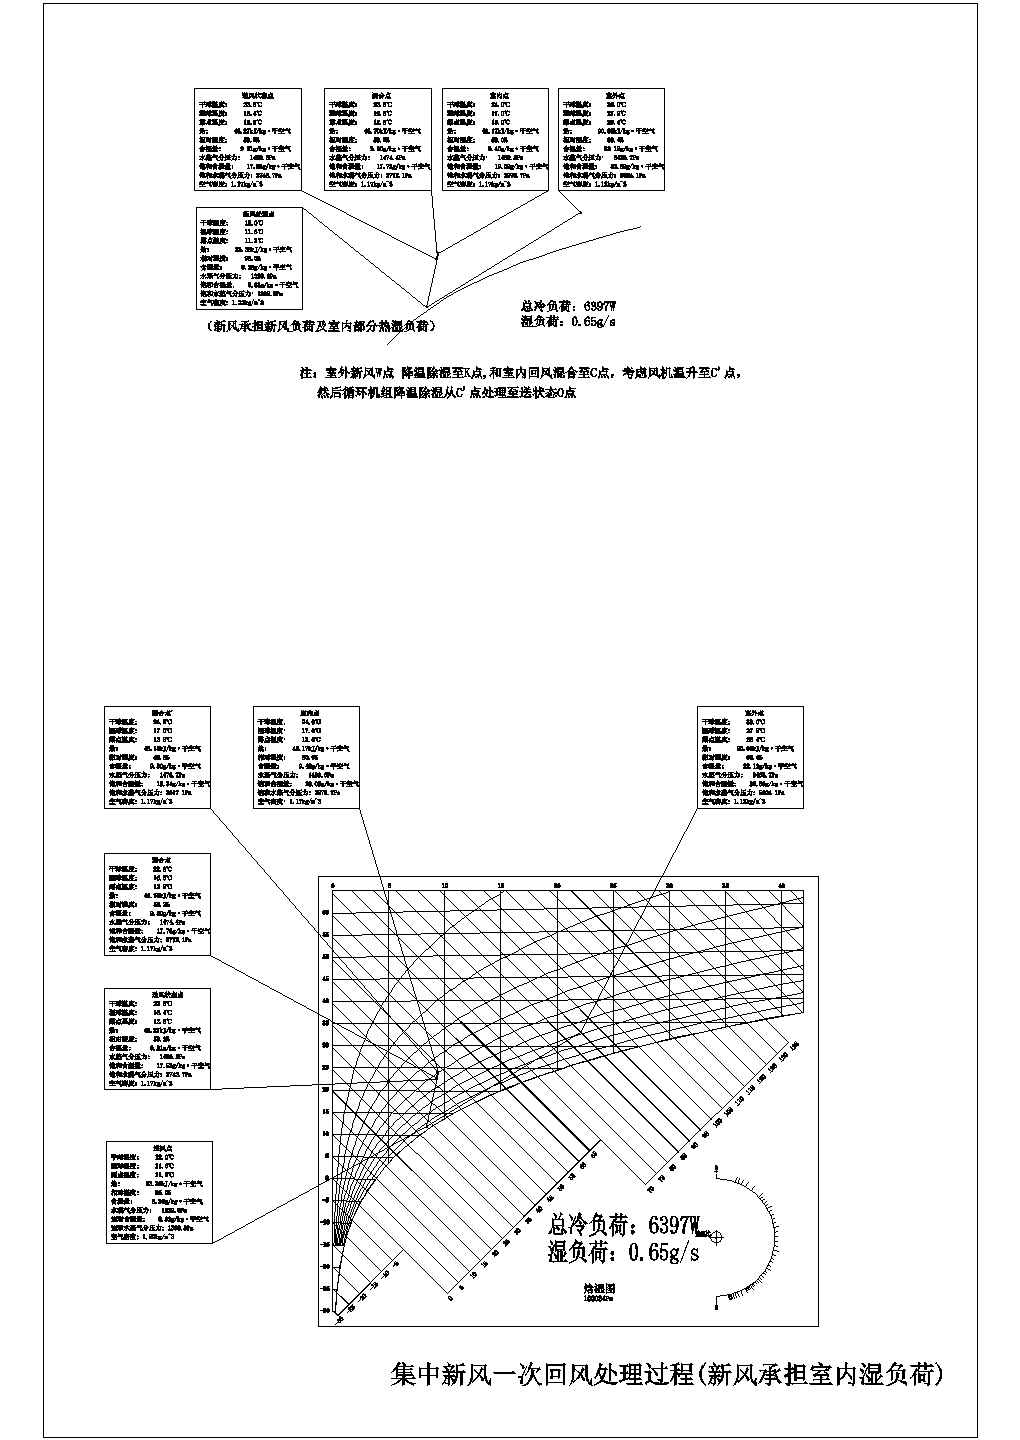 深圳市滨海医院空调风系统原理图纸